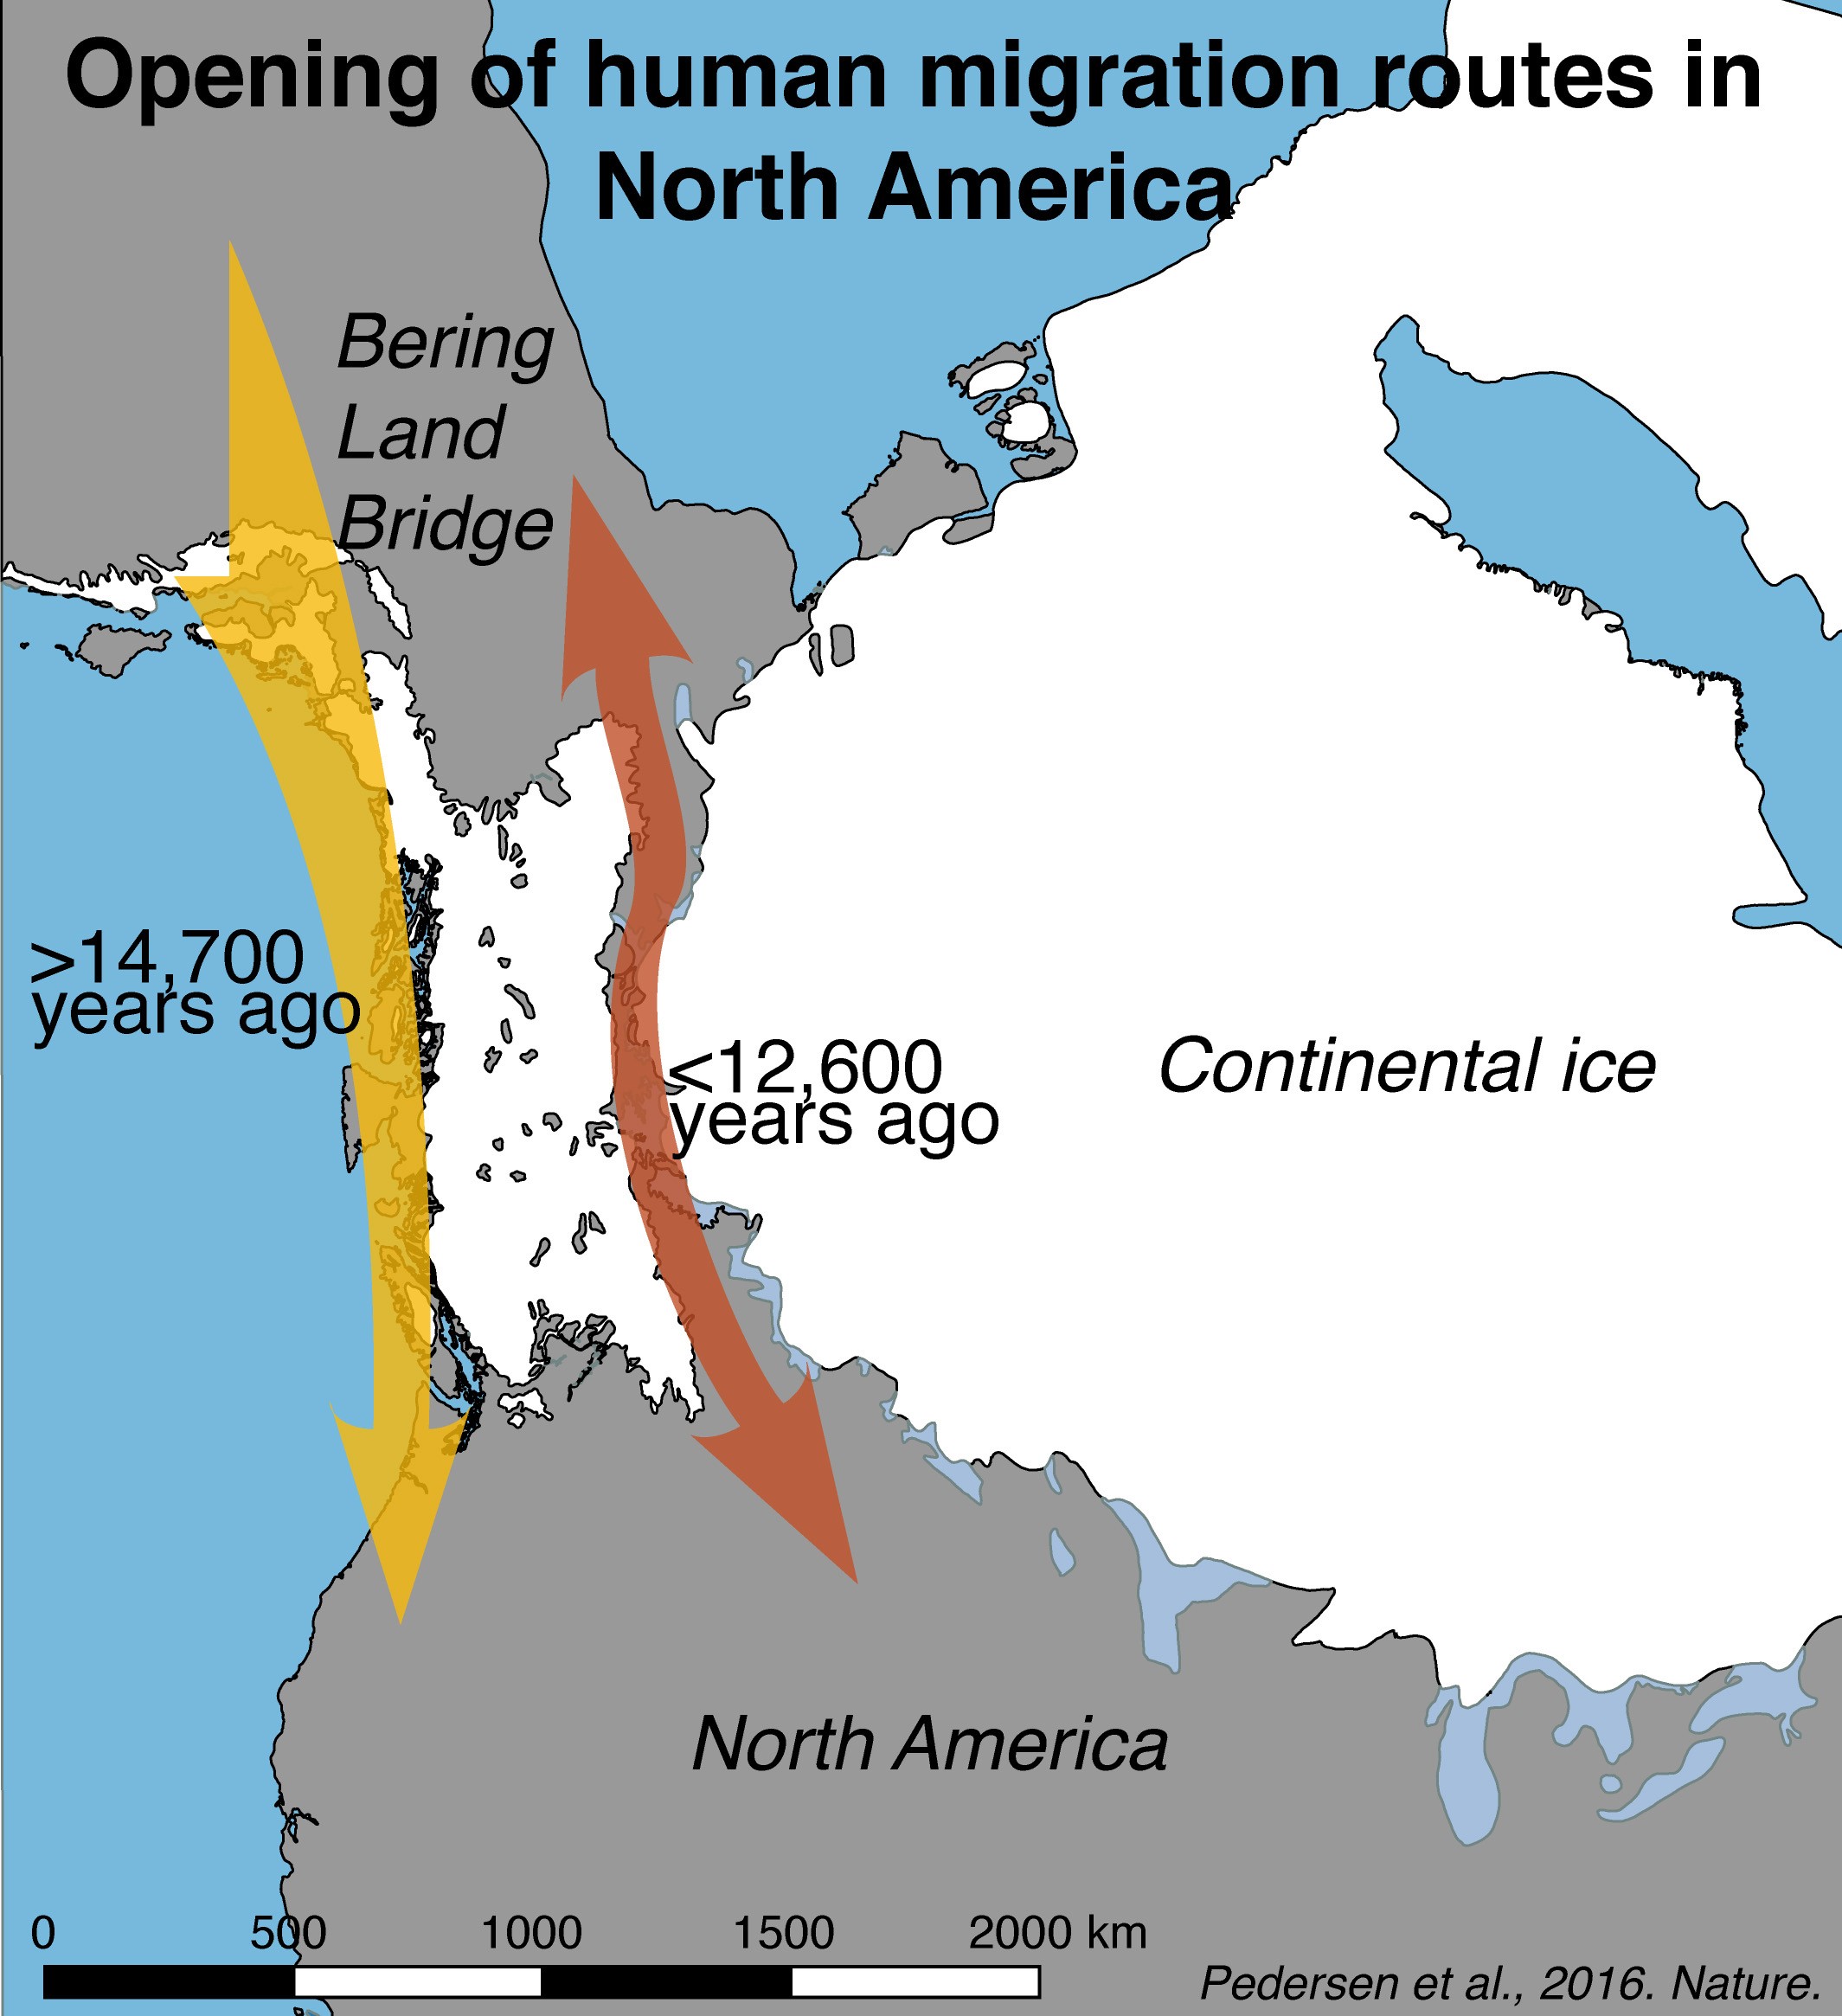  Mapa mostra a abertura das rotas de migração para a América do Norte, de acordo com o estudo  (Foto: Mikkel Winther Pedersen/Divulgação)